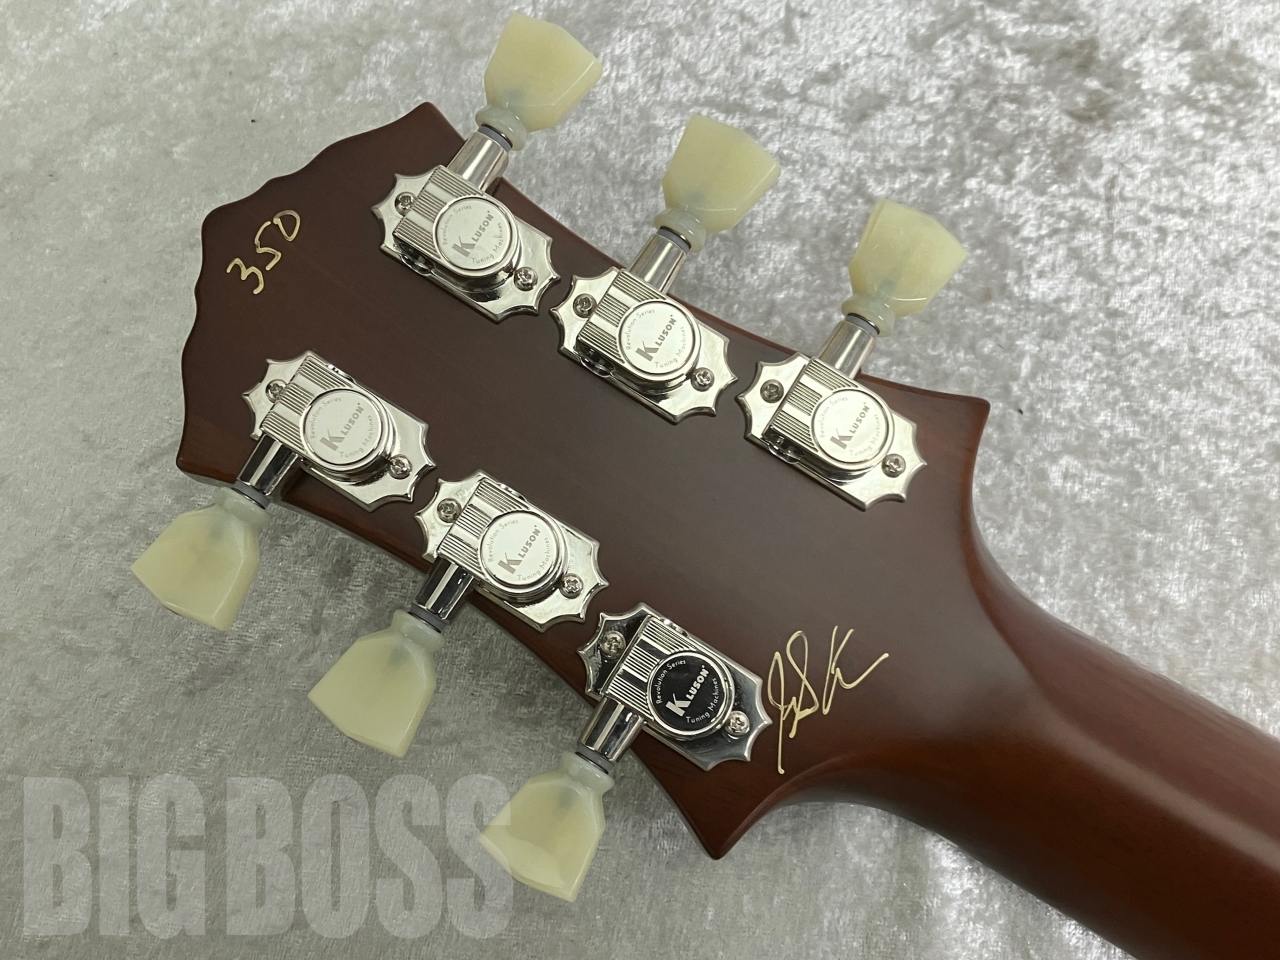 【即納可能】Knaggs Guitars(ナッグスギターズ) KGT CHENA T2 #350 お茶の水駅前店(東京)